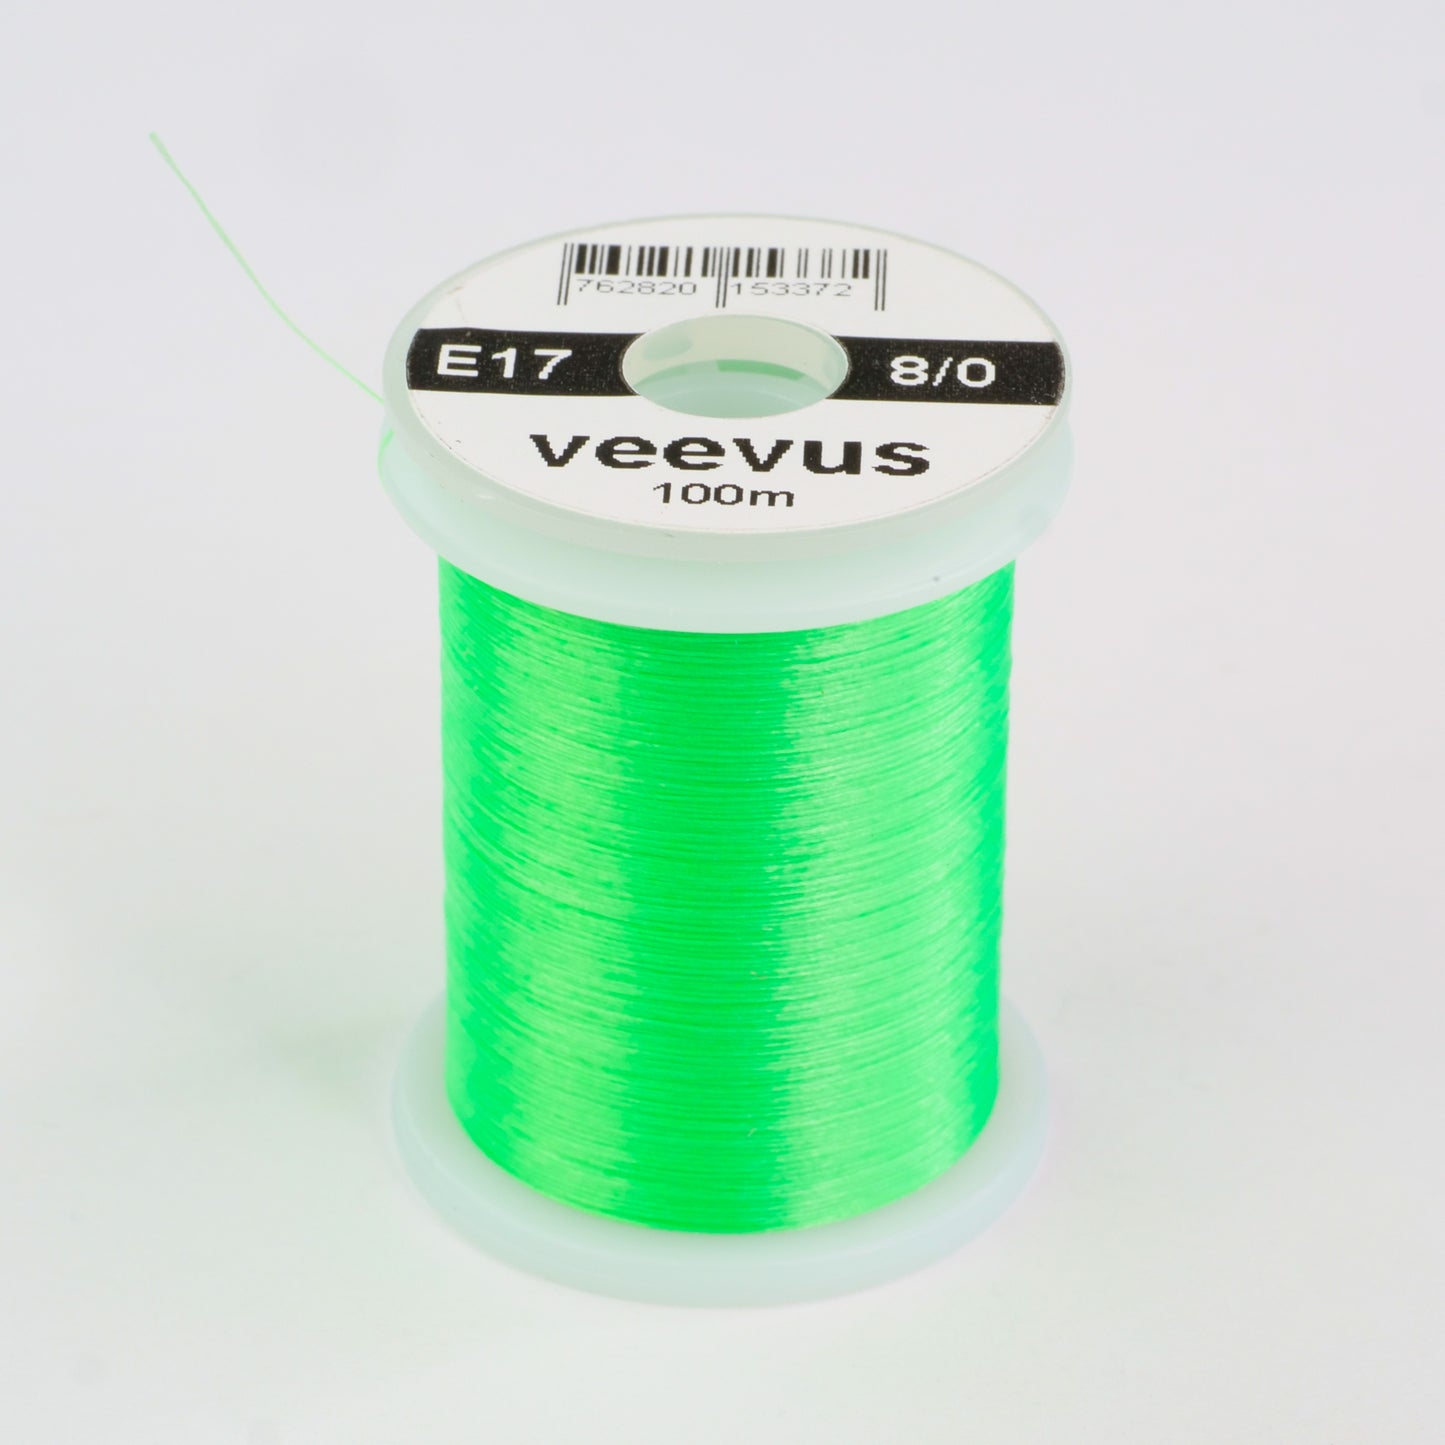 Veevus 8-0 Thread